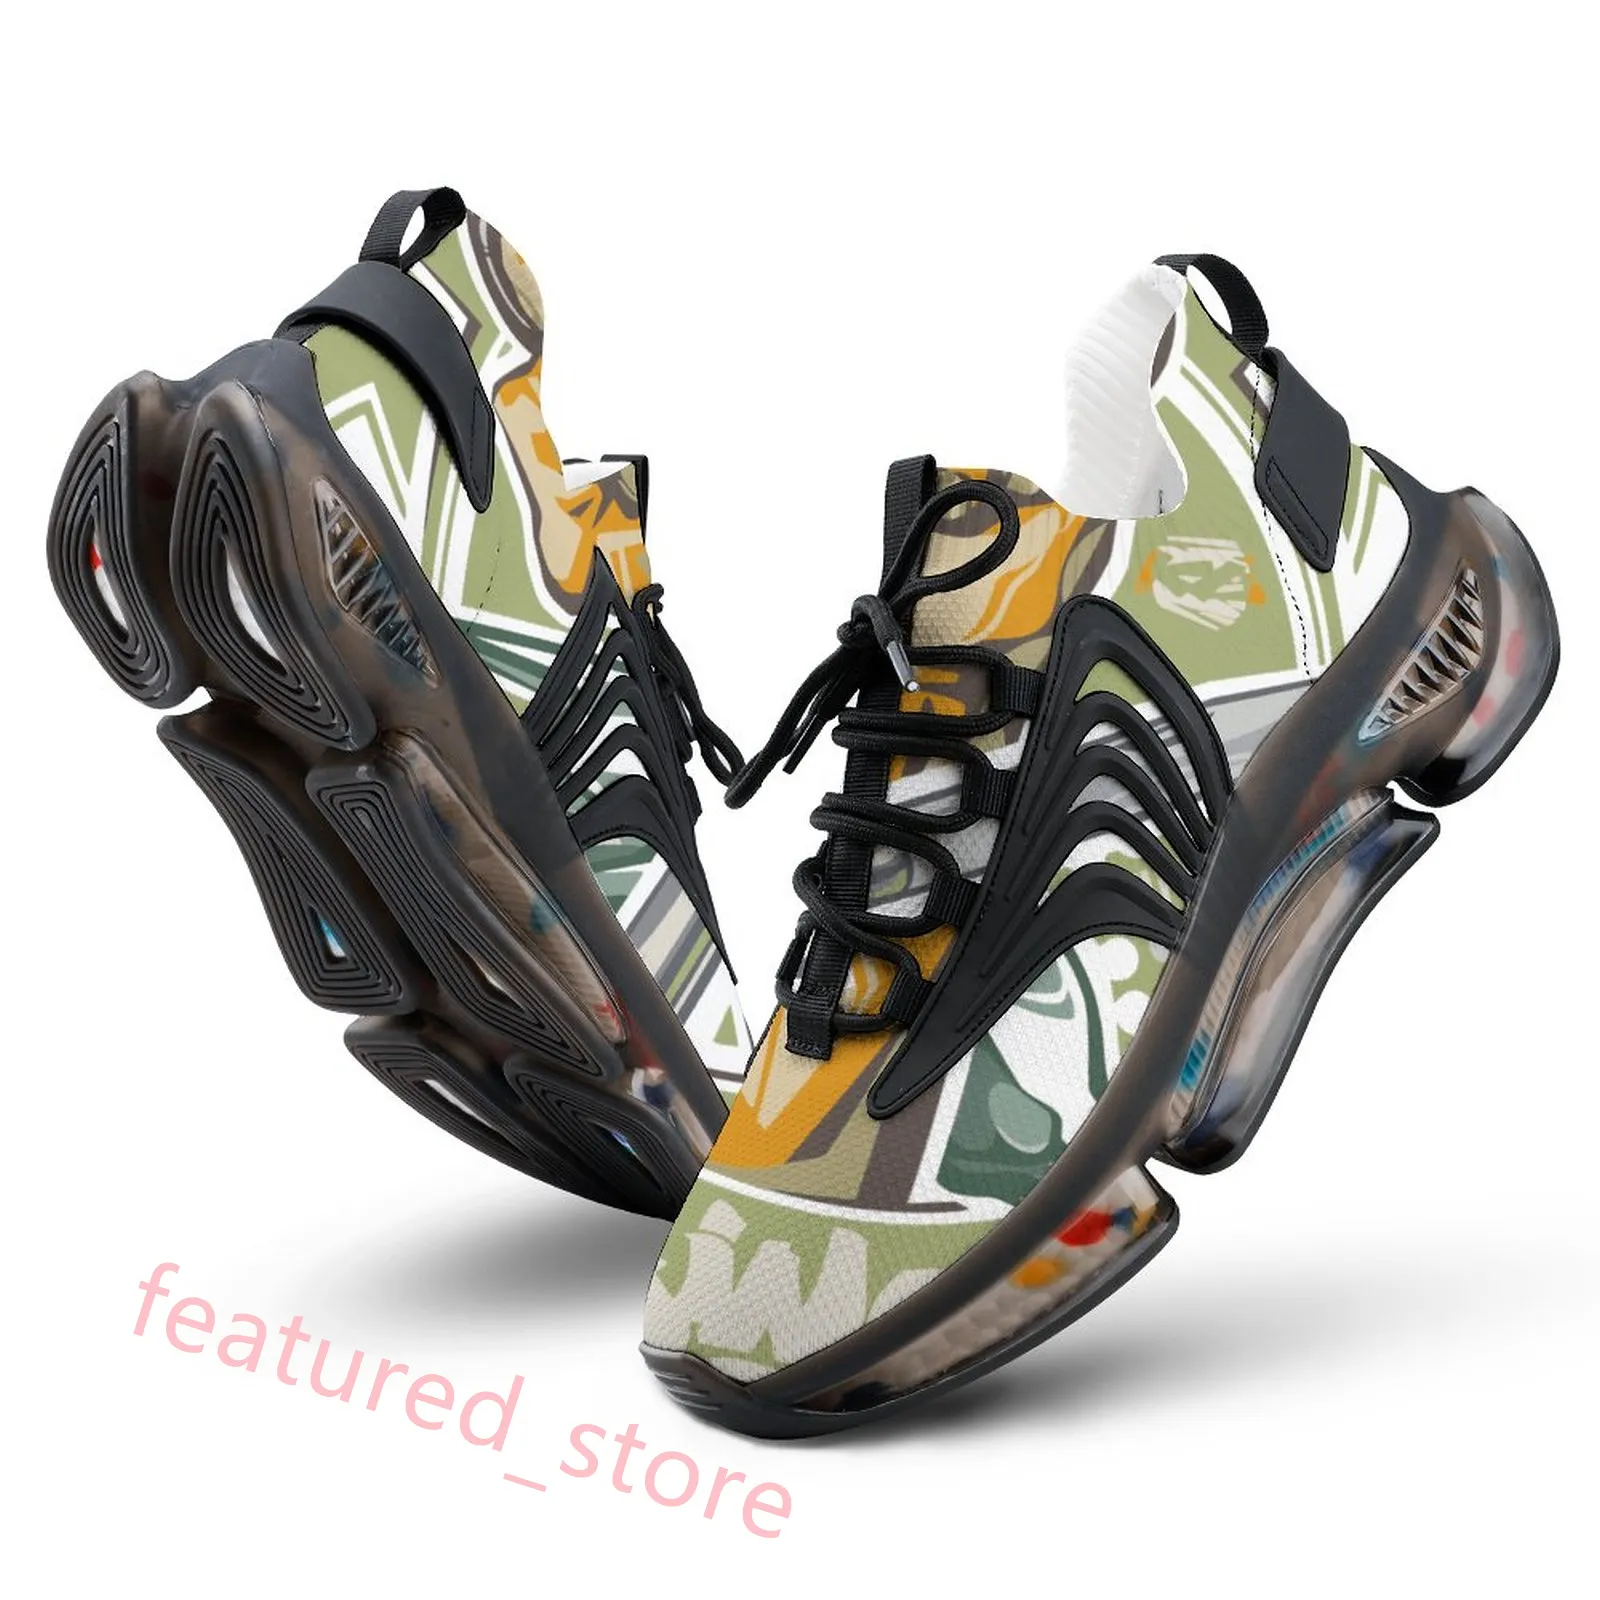 カスタムシューズDIYソフト16カスタマイズウォーターシューズメンズレディースの快適な通気性のある靴を受け入れるための写真を提供する